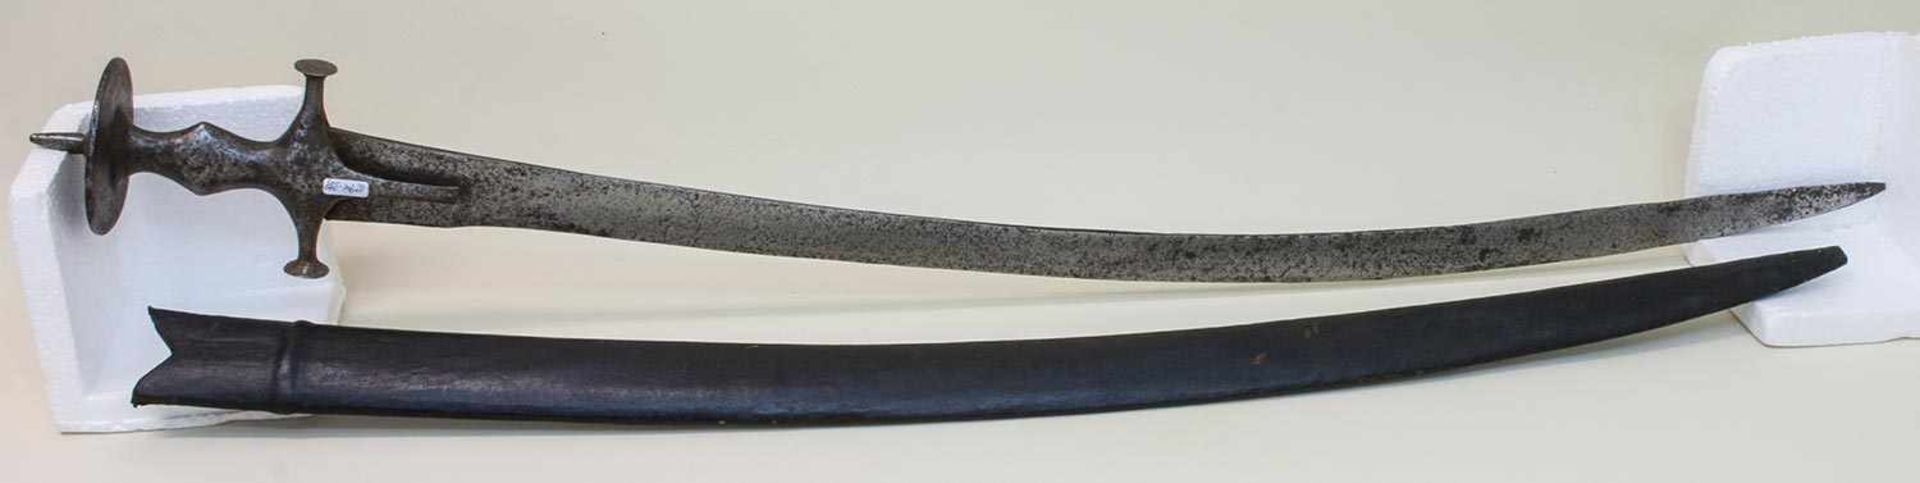 Tulwar Indien um 19. Jh., geschmiedetes Eisengefäß, gekrümmte Rückenklinge, Lederscheide, L. 91 cm